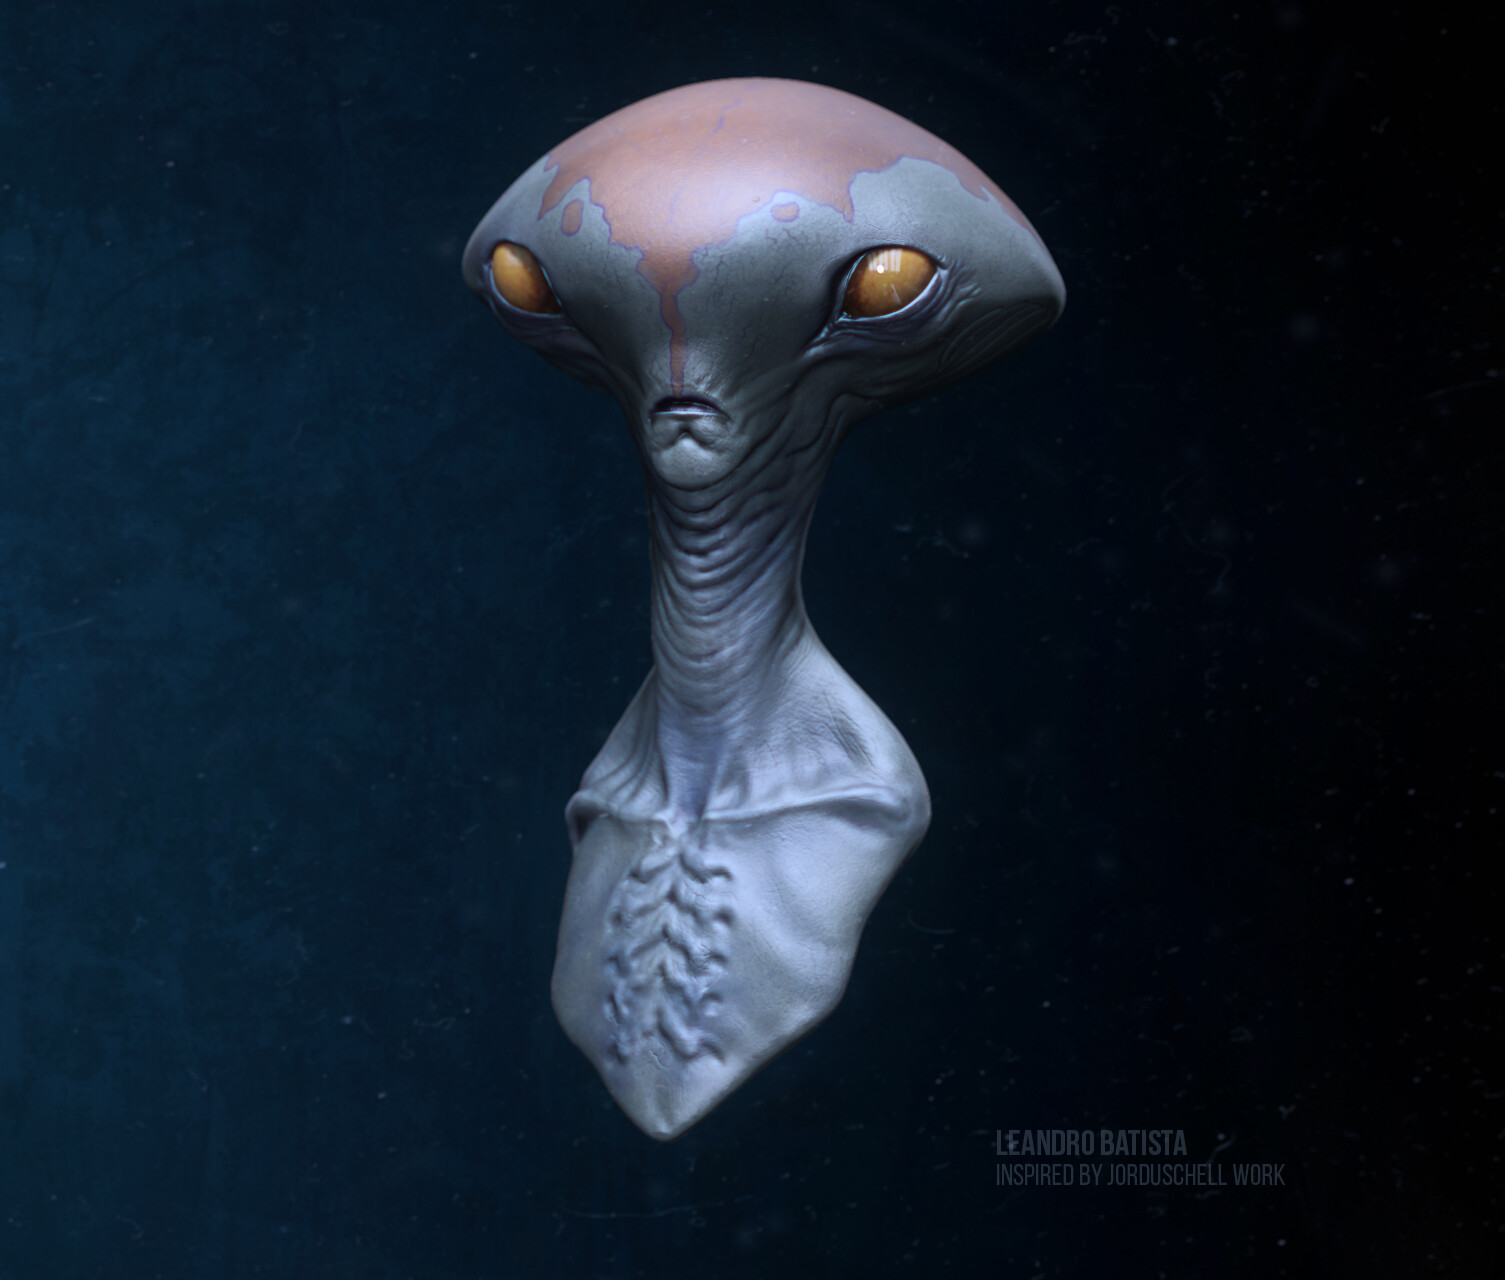 ArtStation - Alien - inspired by Jorduschell Work